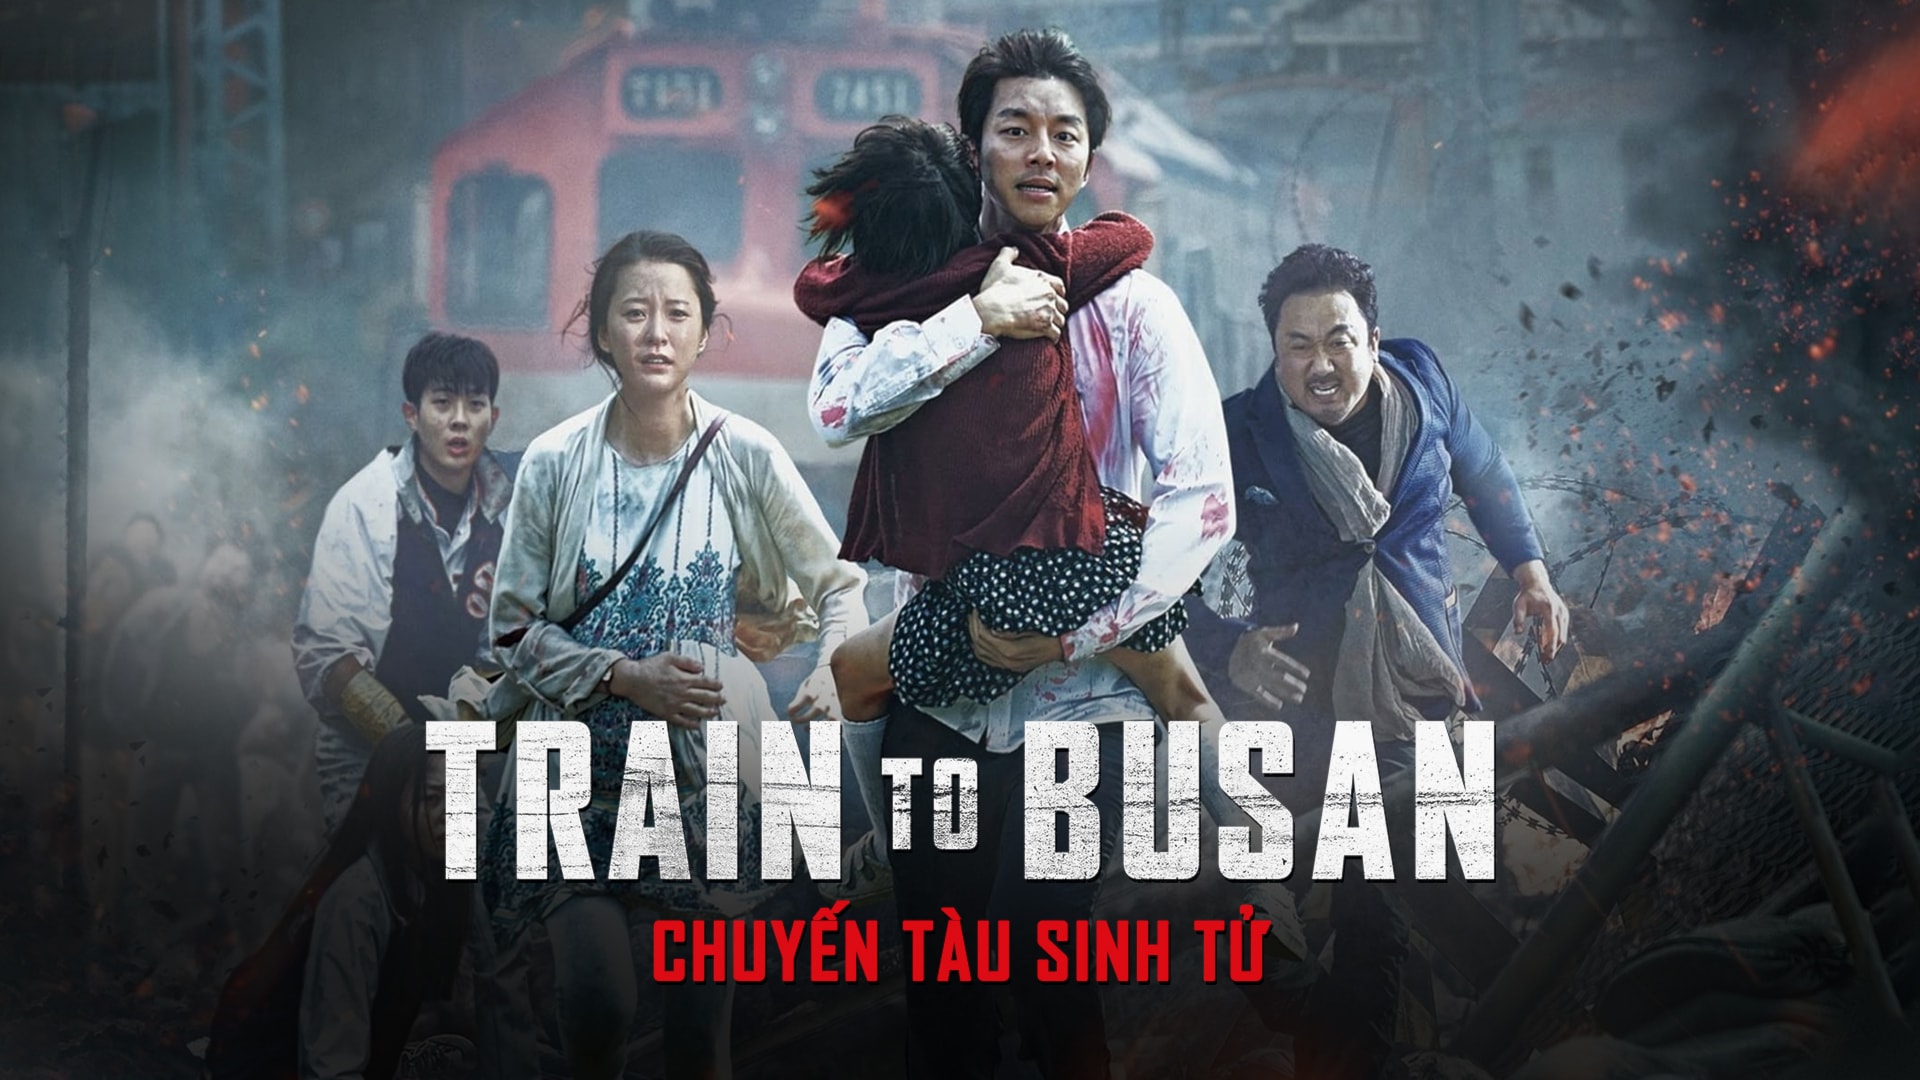 Train to Busan (Chuyến tàu sinh tử)